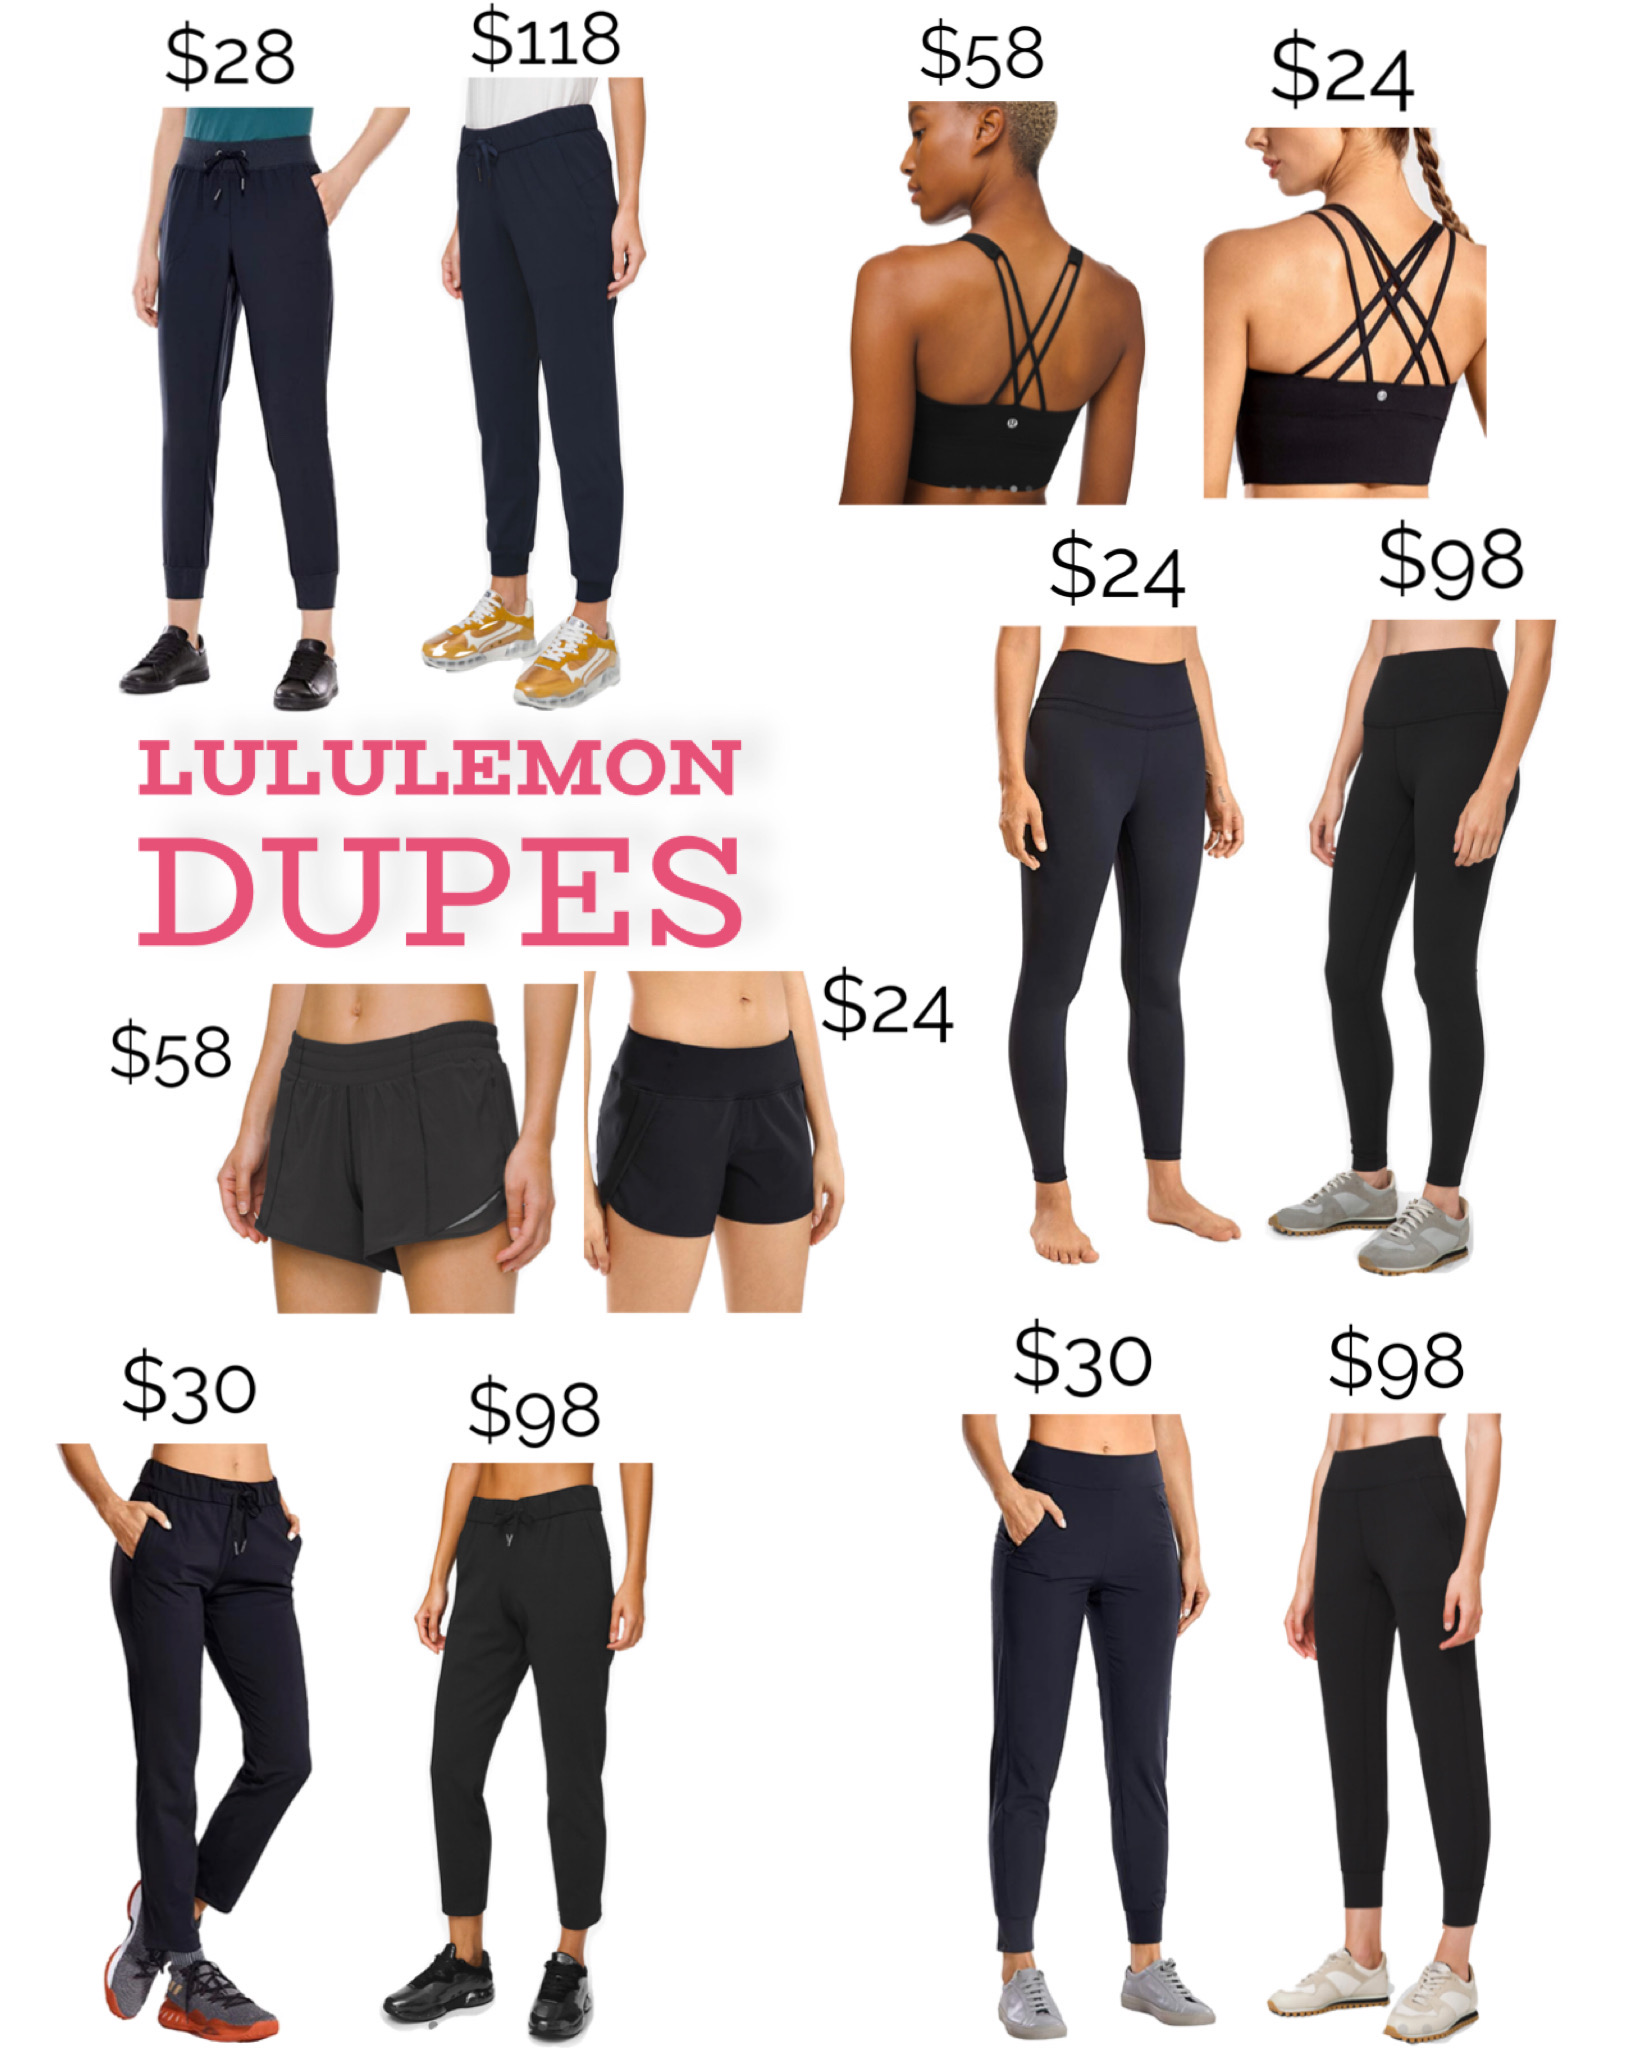 Lululemon Dupes from Amazon | MrsCasual